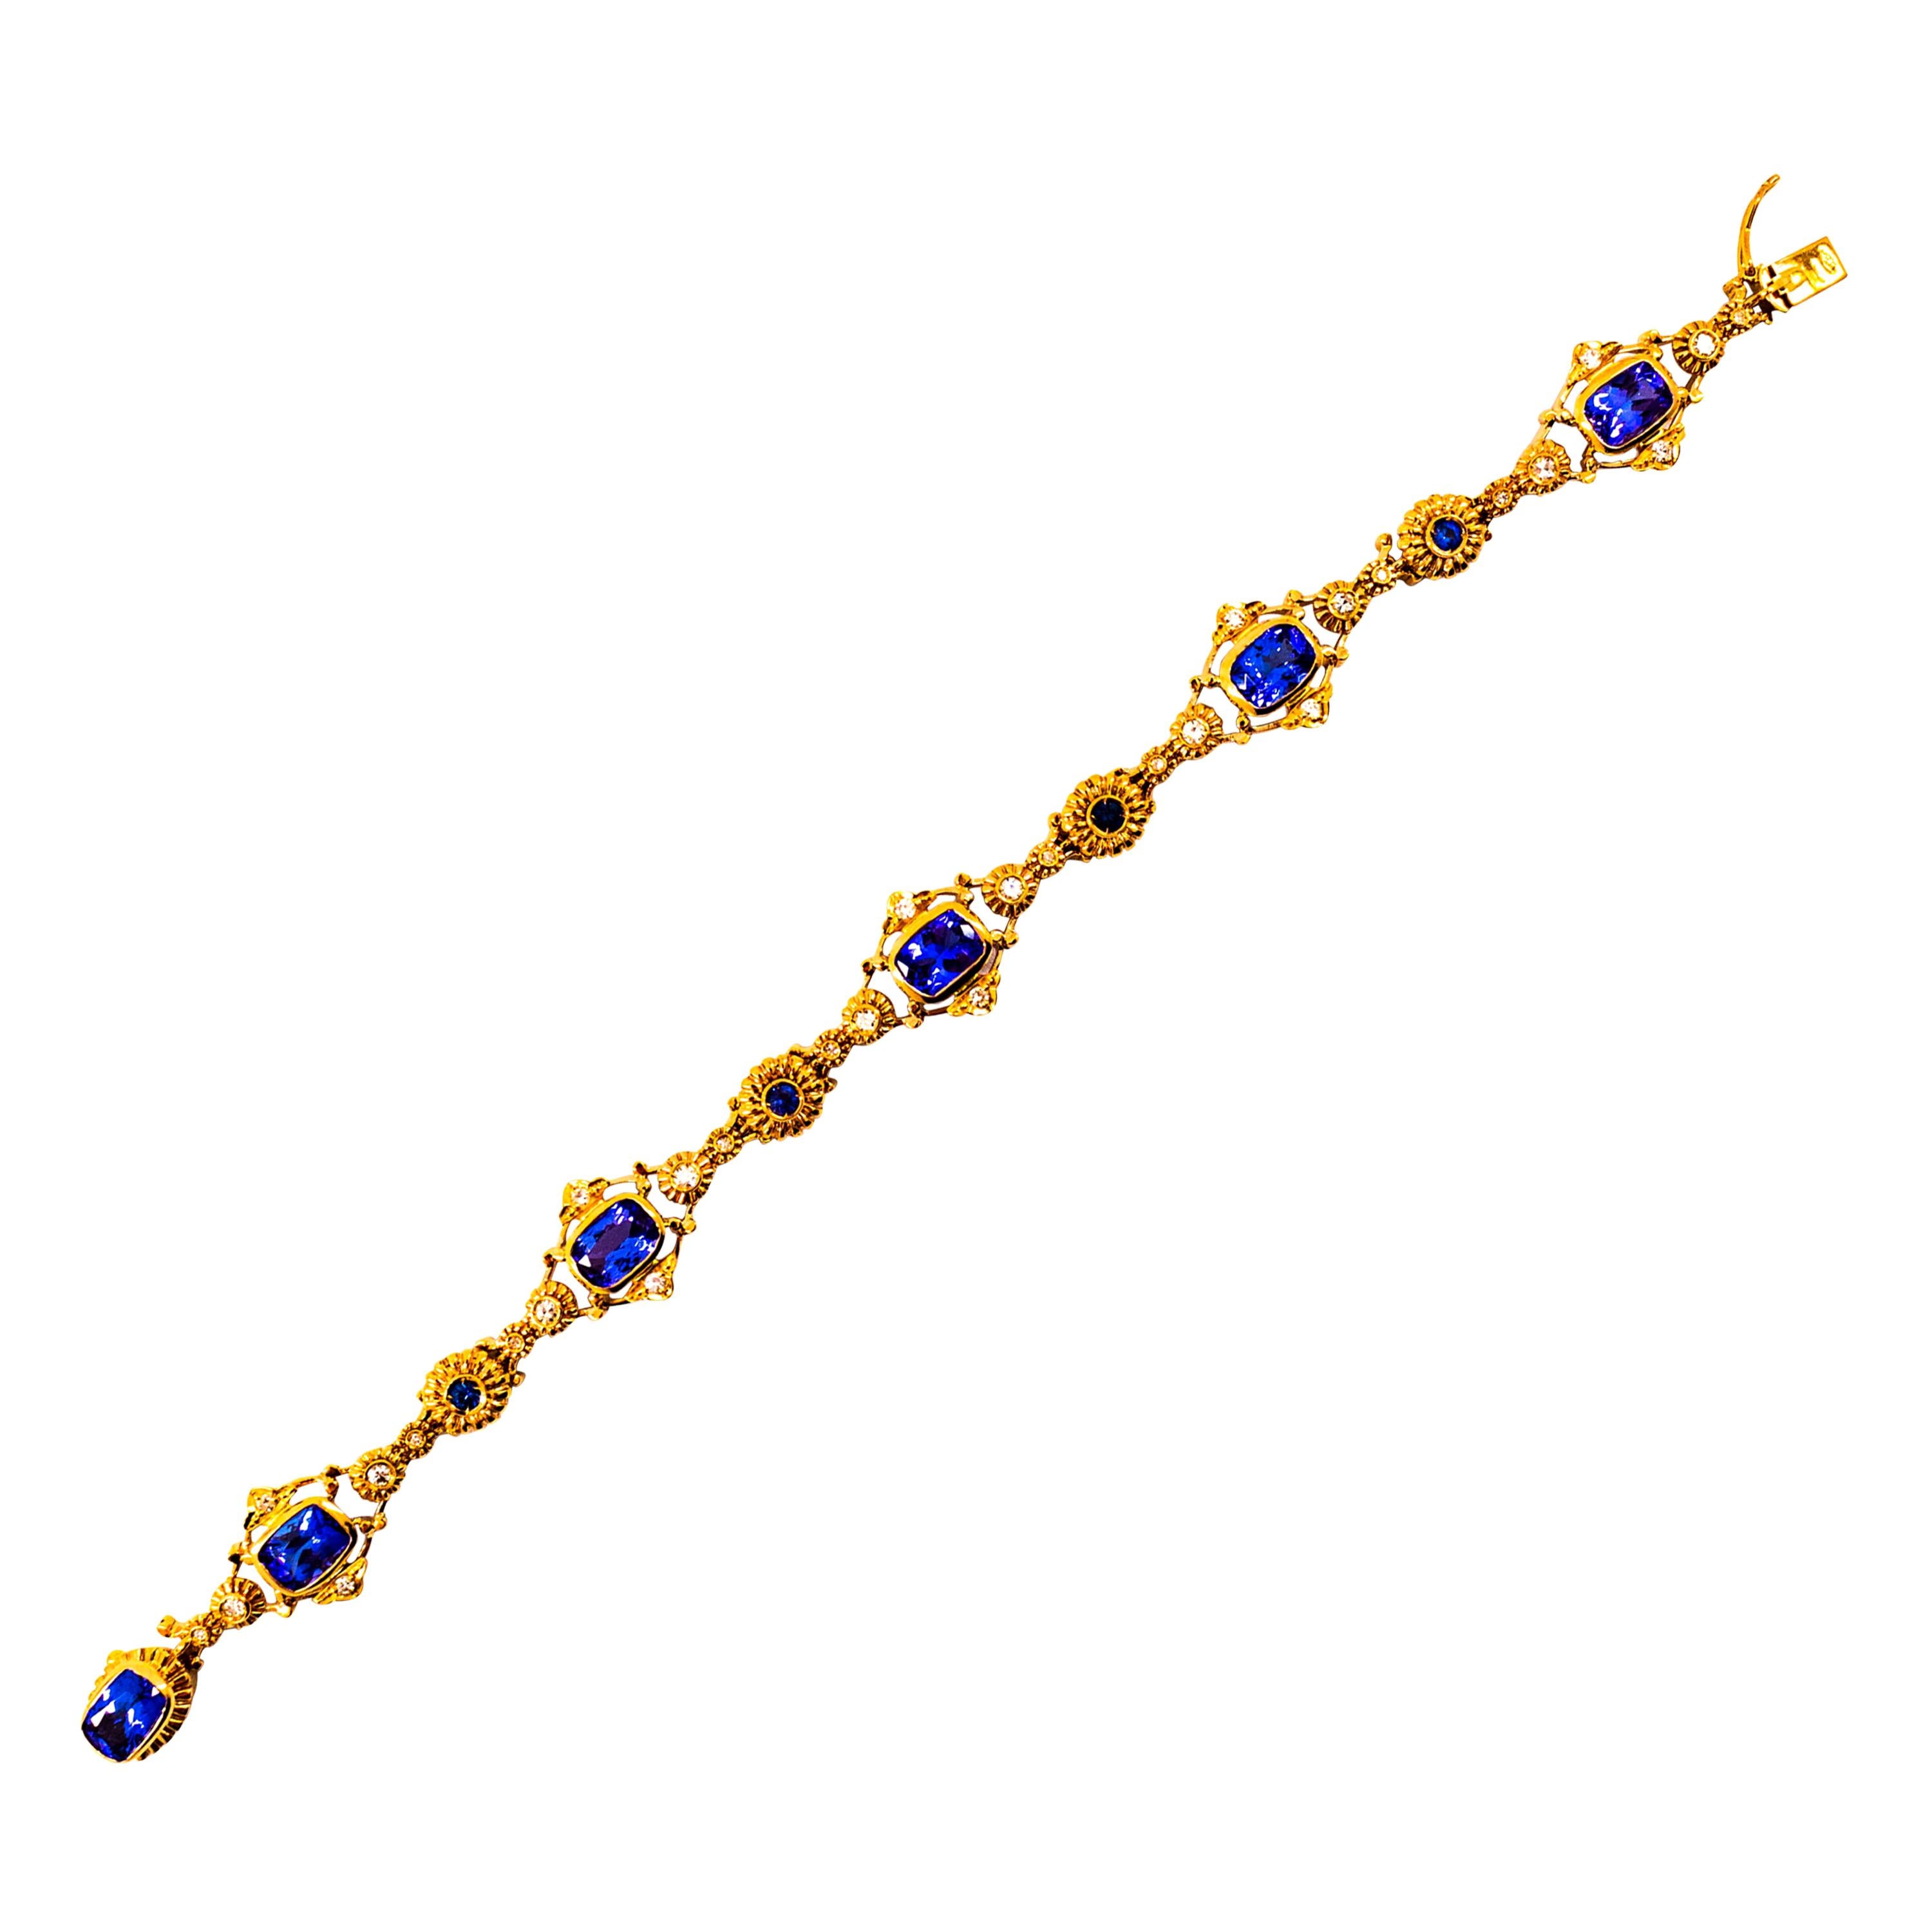 Gelbgold-Armband im Art-déco-Stil mit weißem Diamanten, blauem Saphir und Tansanit